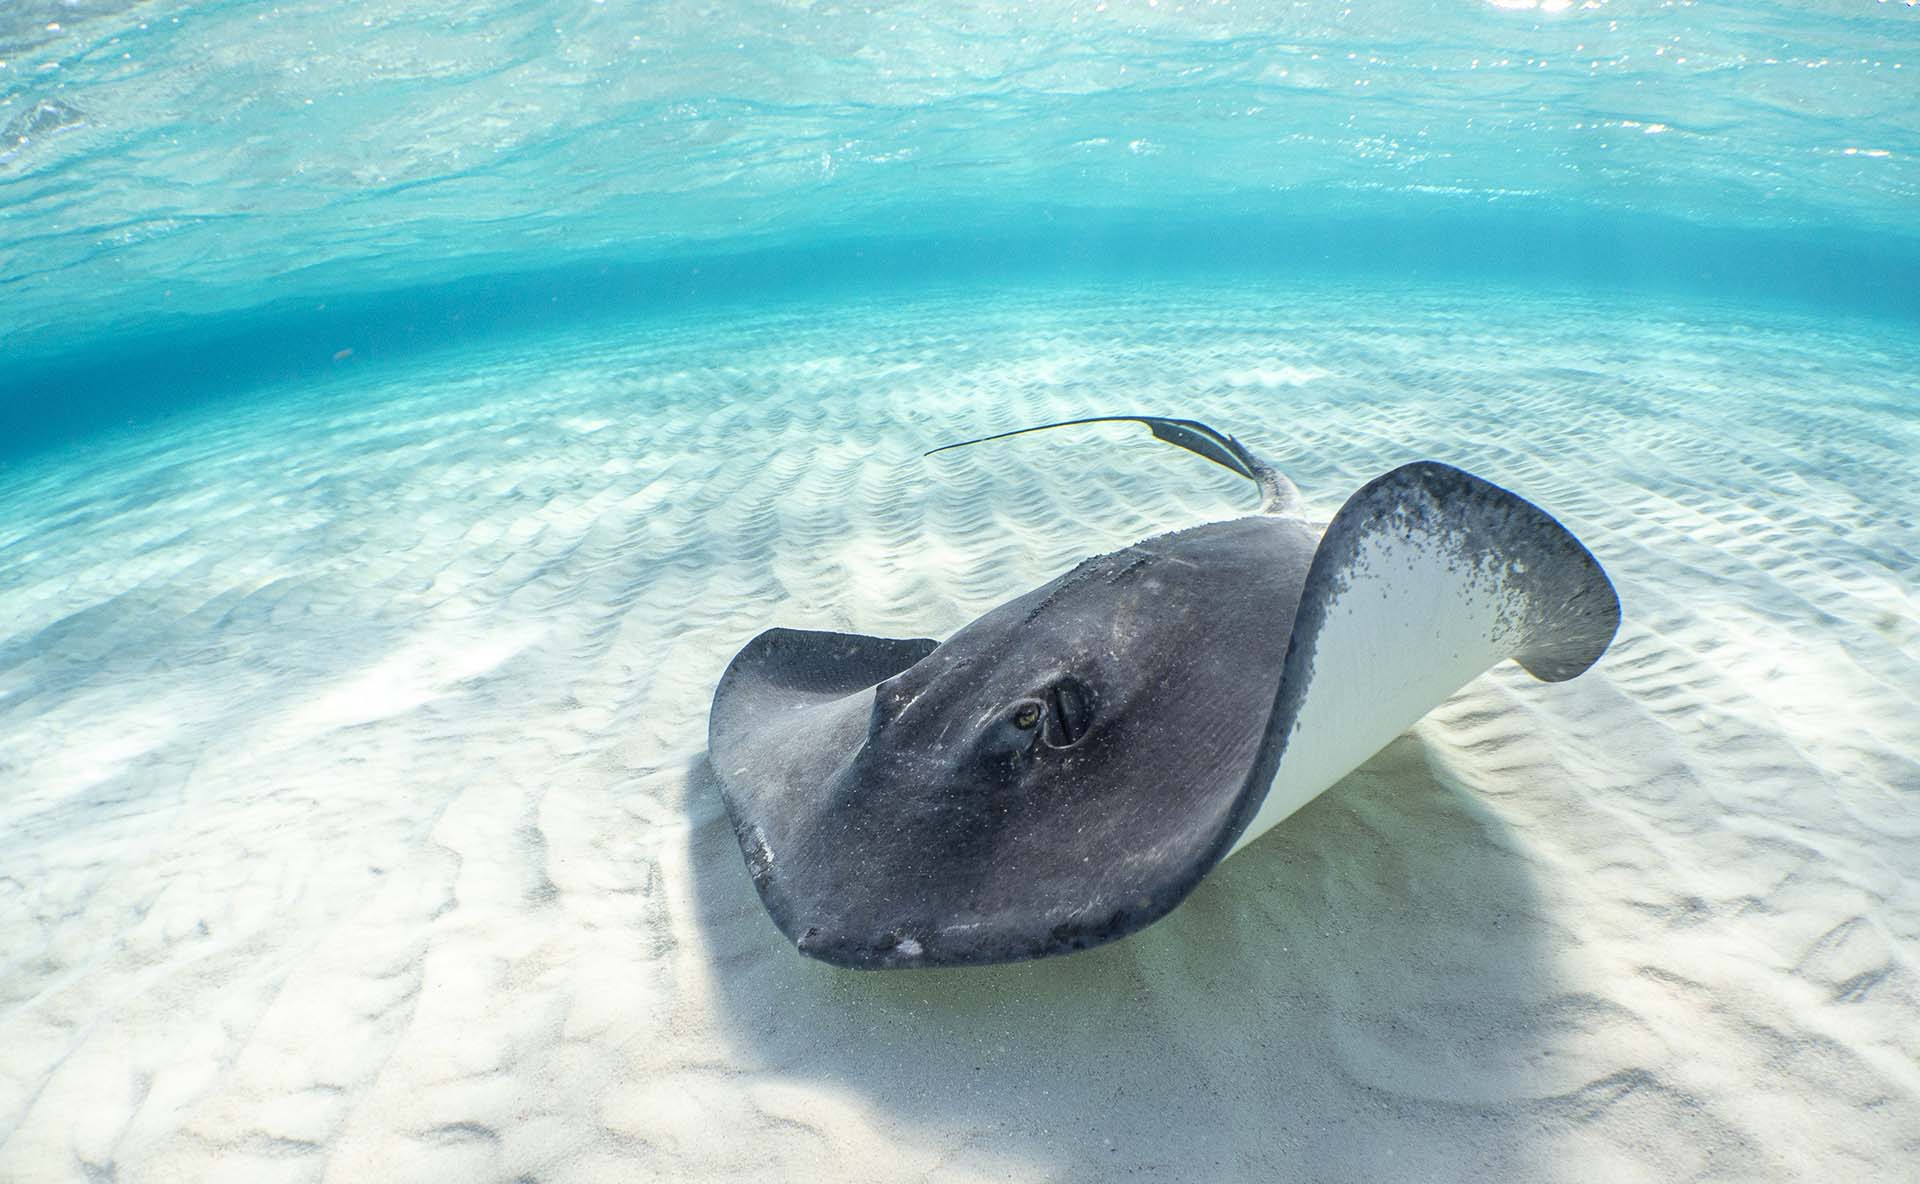 A beautiful shot of a stingray swimming blue water